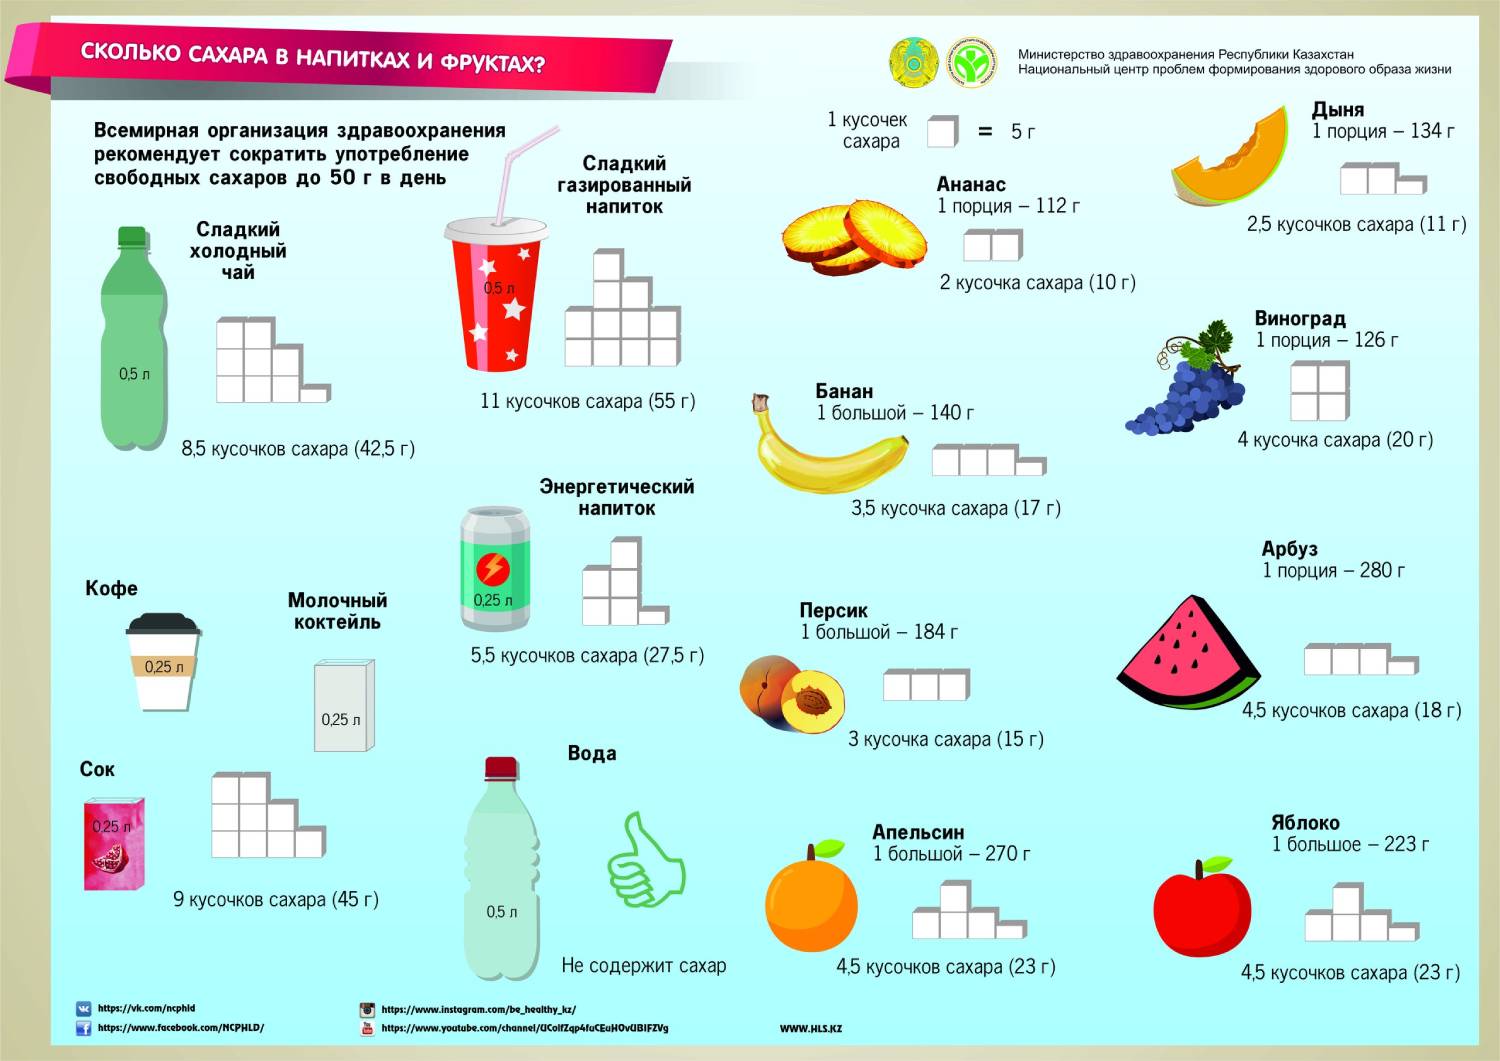 Сколько грамм сахара рекомендуется детям. Количество сахара в банане. Количество сахара в фруктах. Сколько сахаоув банане. Сколько сахара в.Бабане.